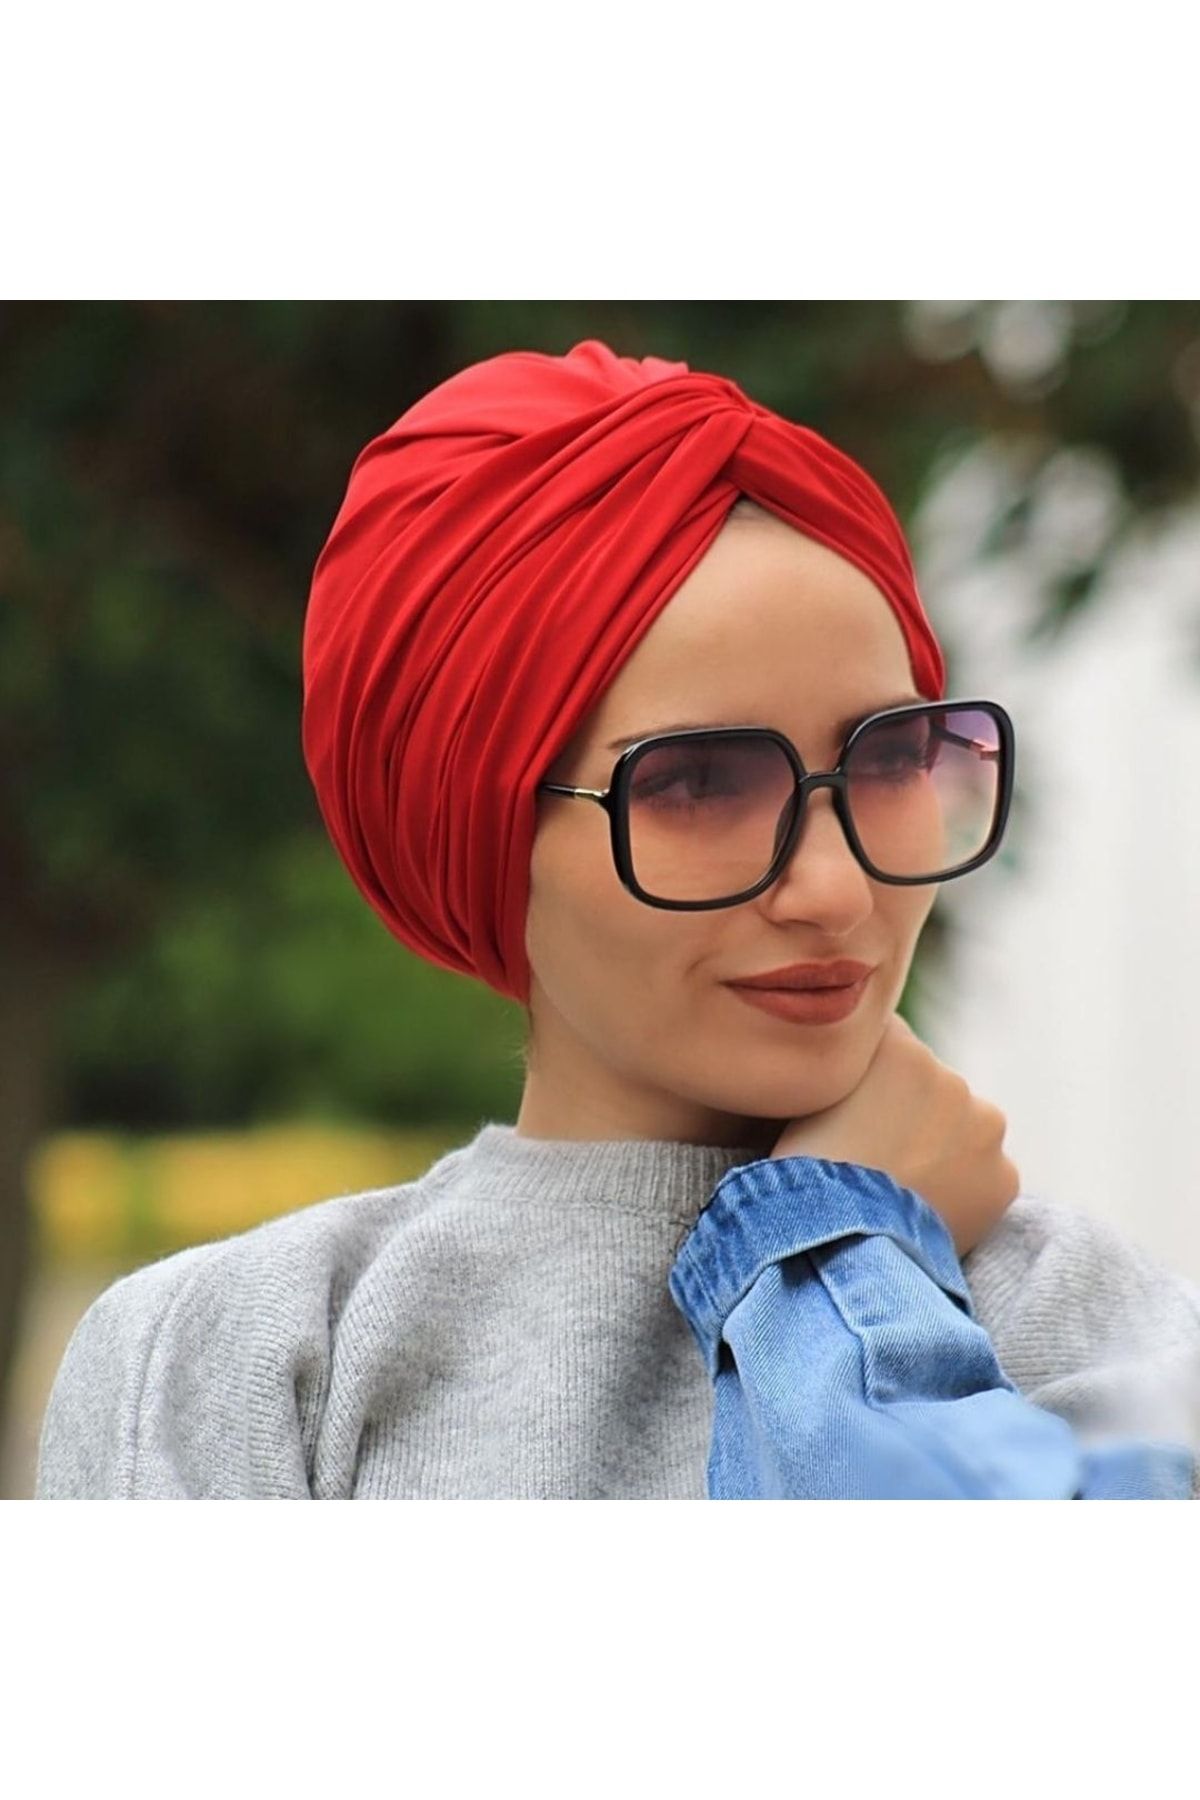 Kardelen Dolama Bone Kırmızı Hazır Model - Özel Tasarım- Yeni Model Tesettür Giyim